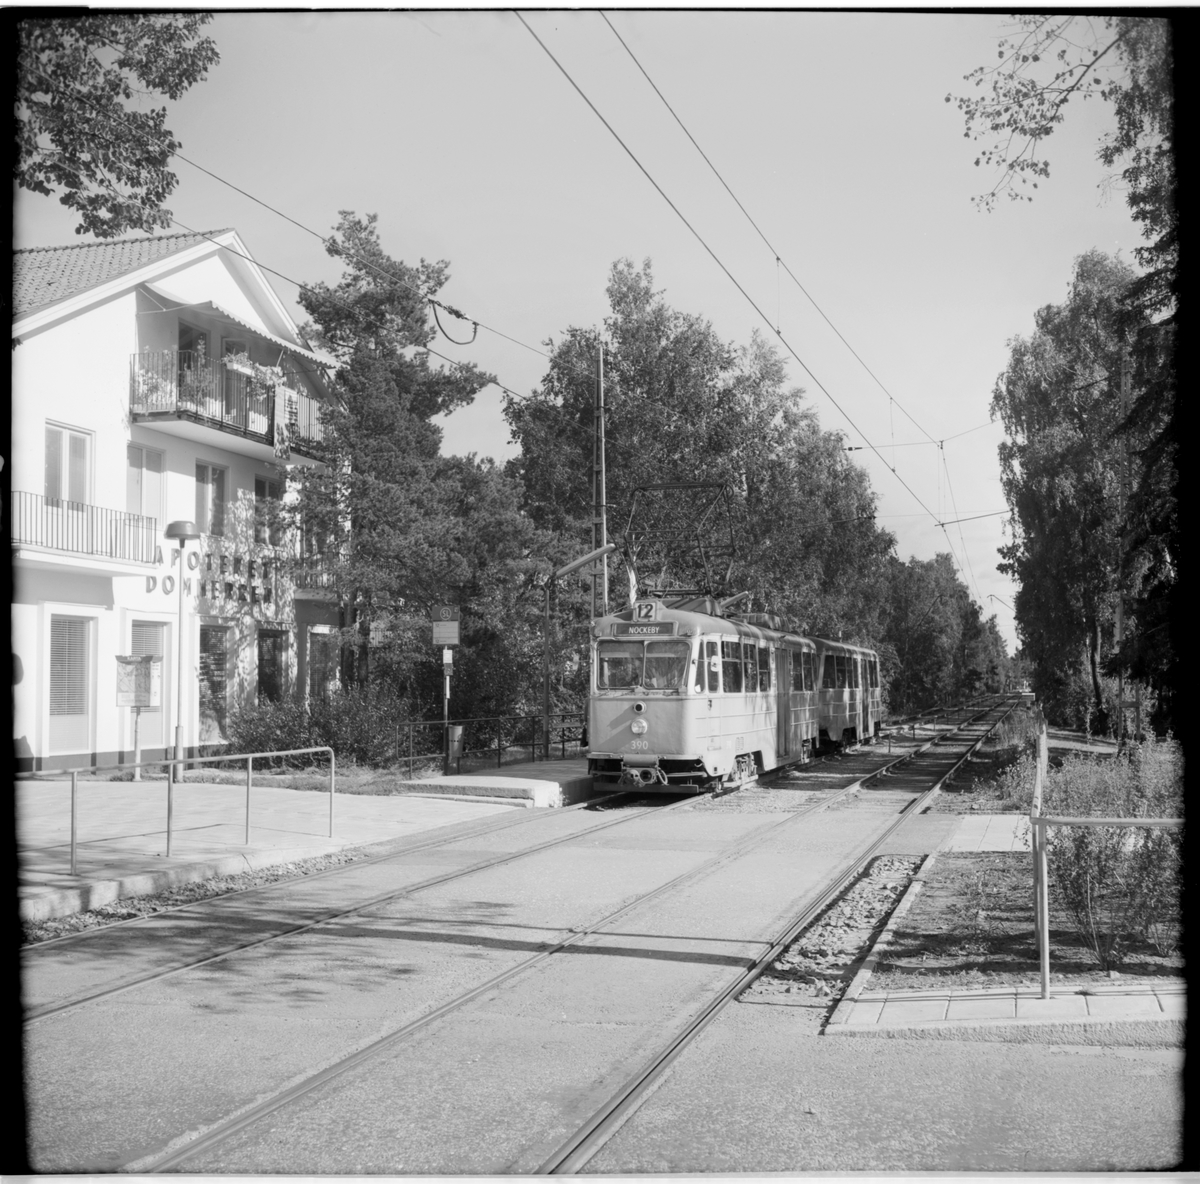 Aktiebolaget Stockholms Spårvägar, SS A24 390 "ängbyvagn" linje 12 Nockeby på hållplats vid Nockeby torg.